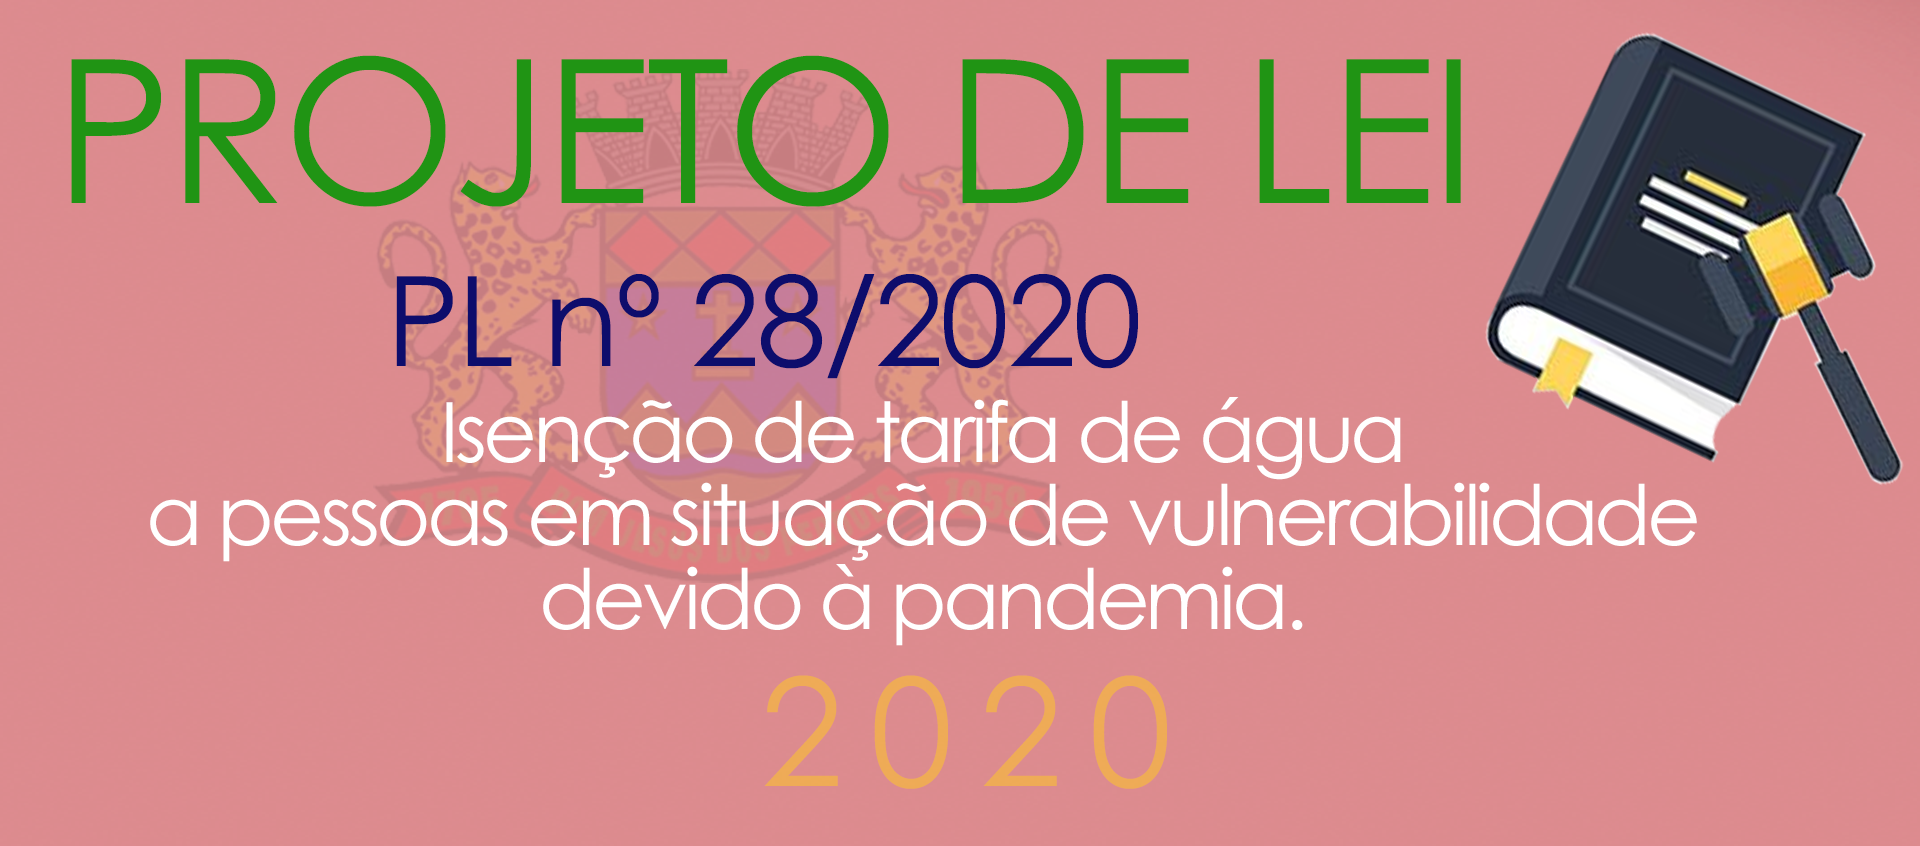 PL nº 28/2020 - Isenção da tarifa de água.